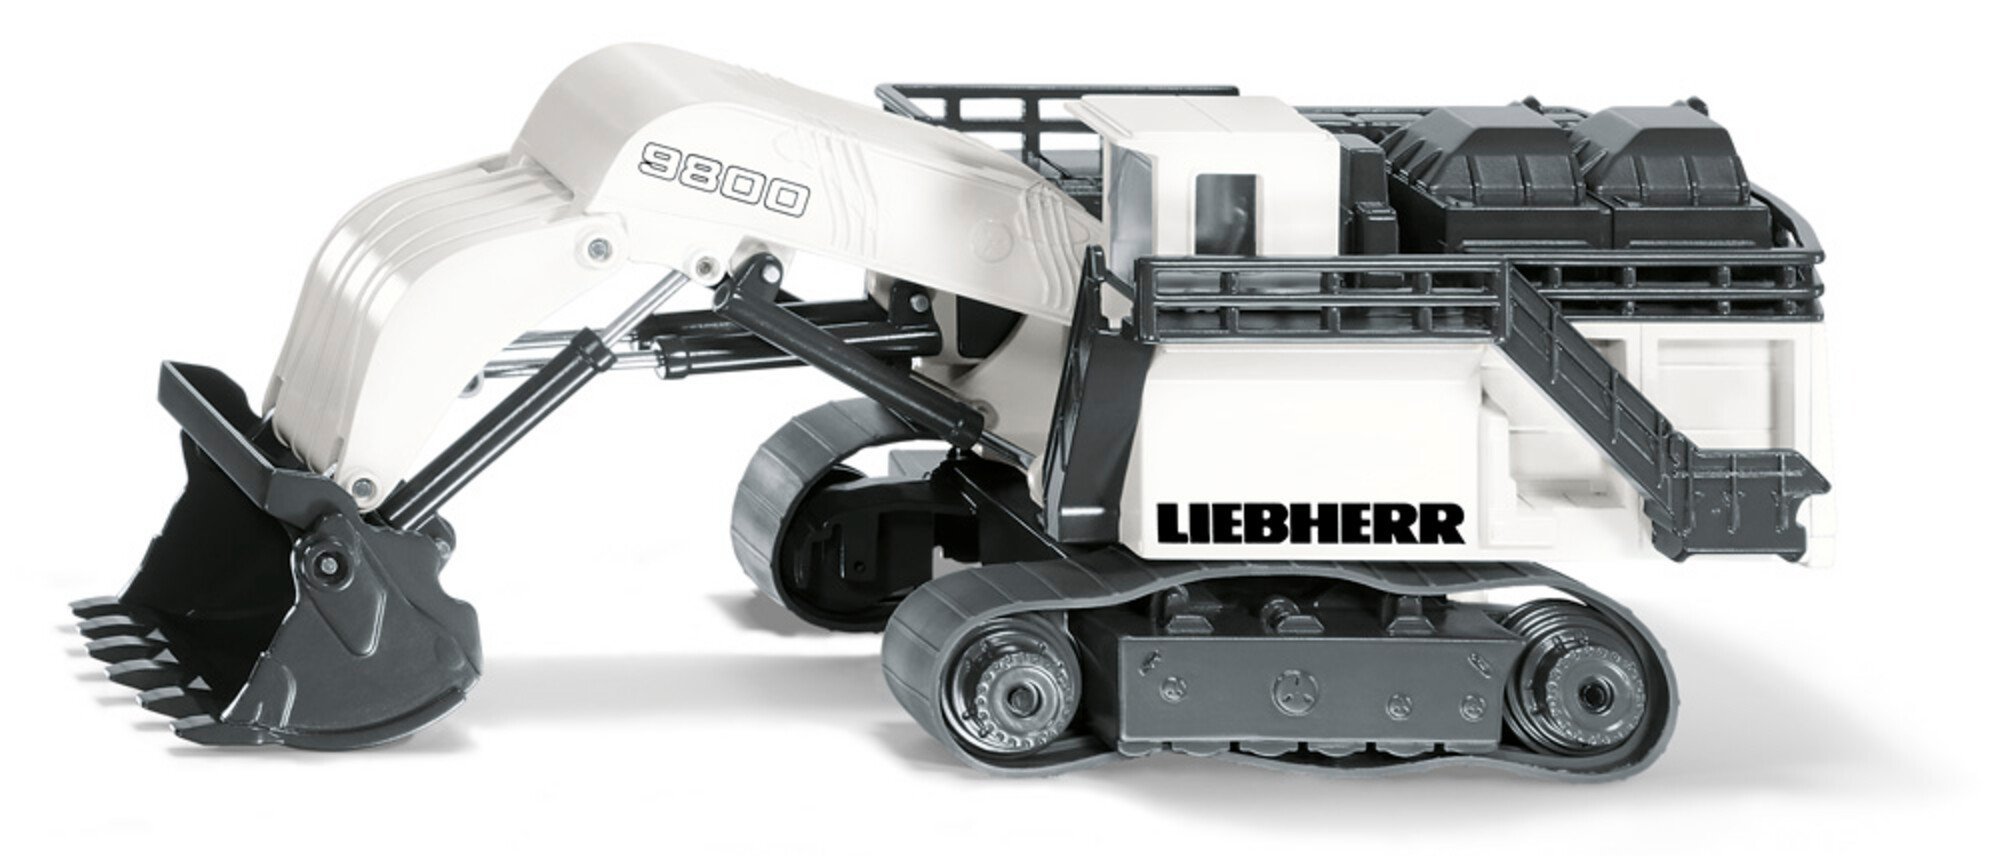 Liebherr R9800 Mining excavator